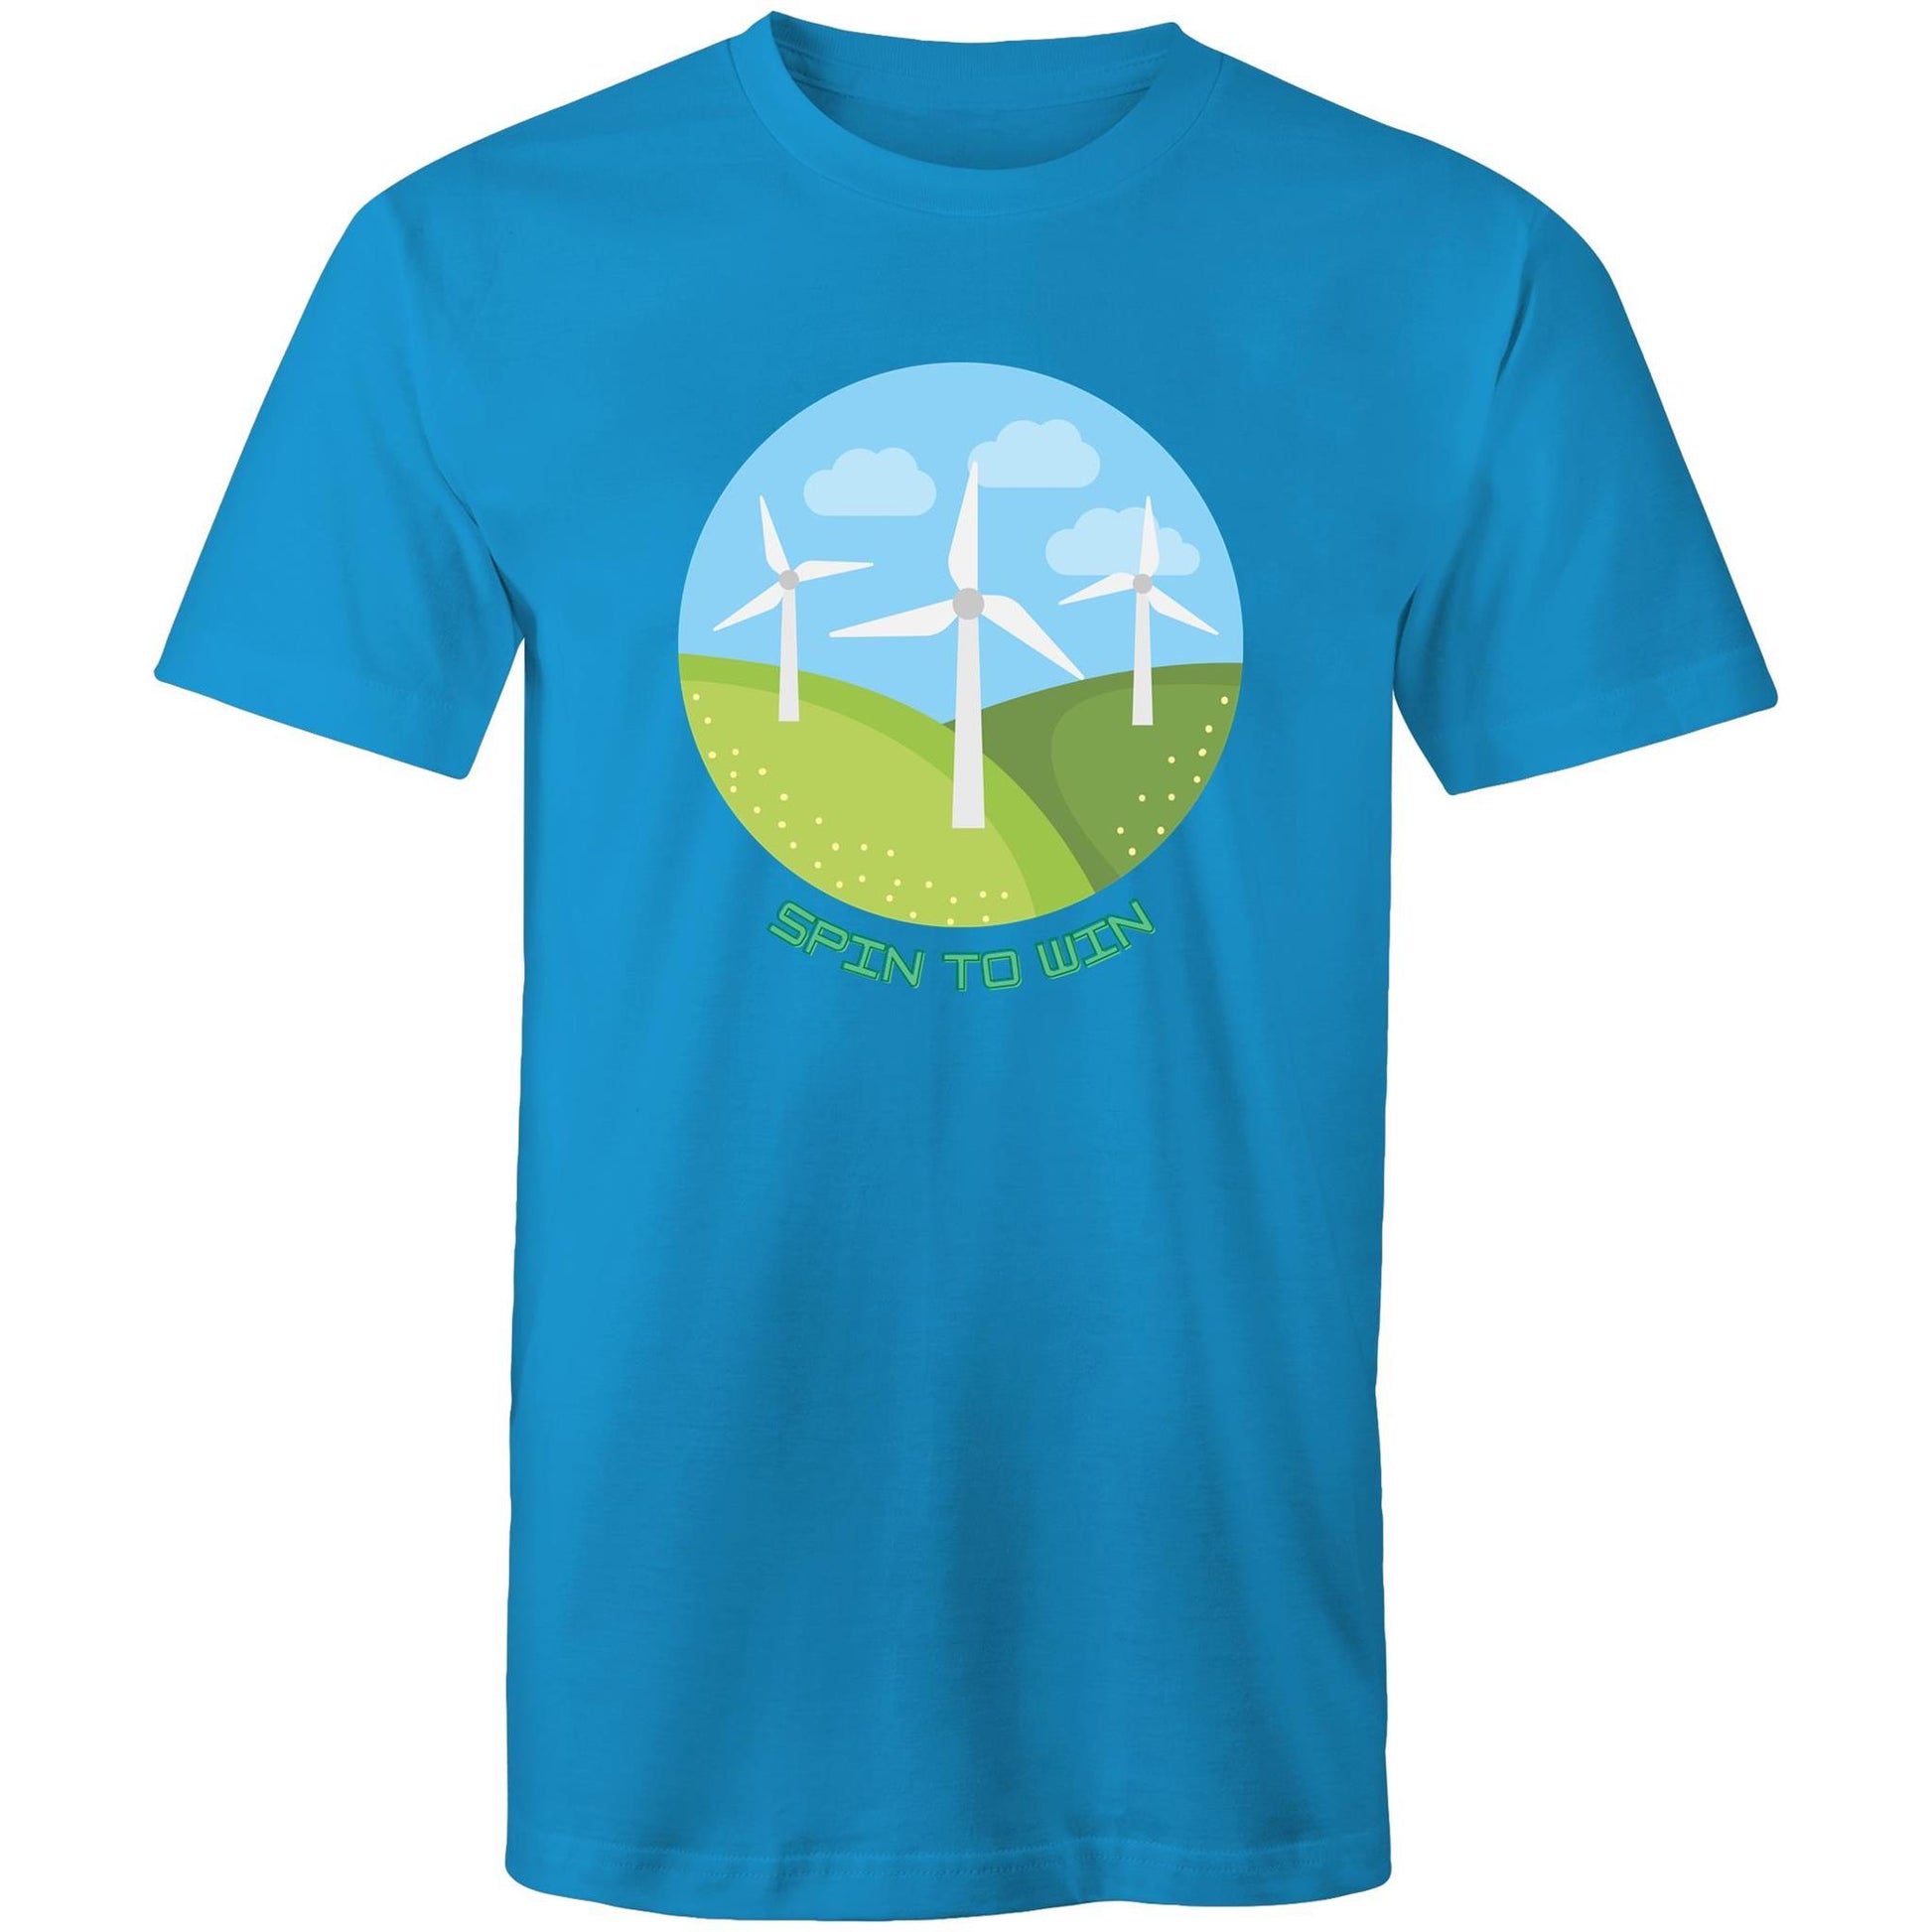 Spin To WIn - Mens T-Shirt Arctic Blue Mens T-shirt Environment Mens